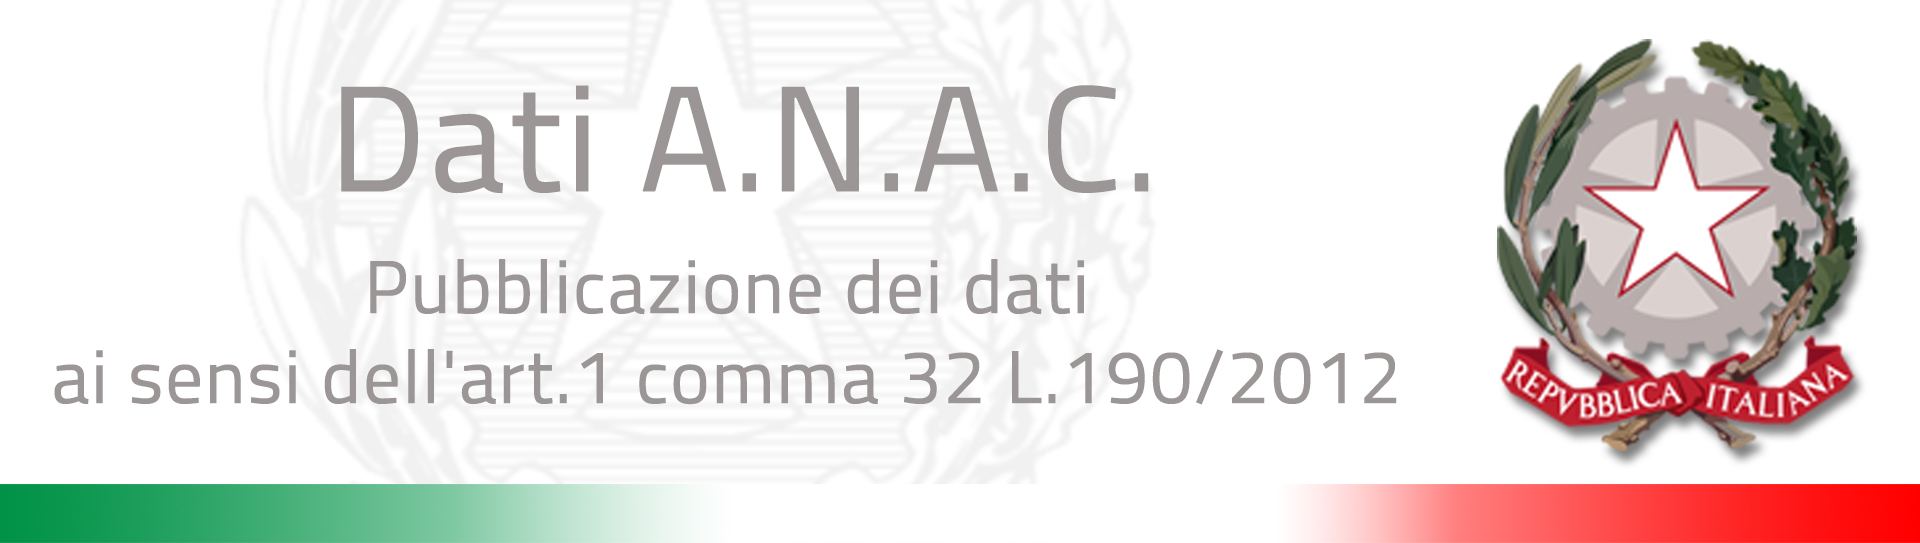 Link a sito interno dei dati Anac